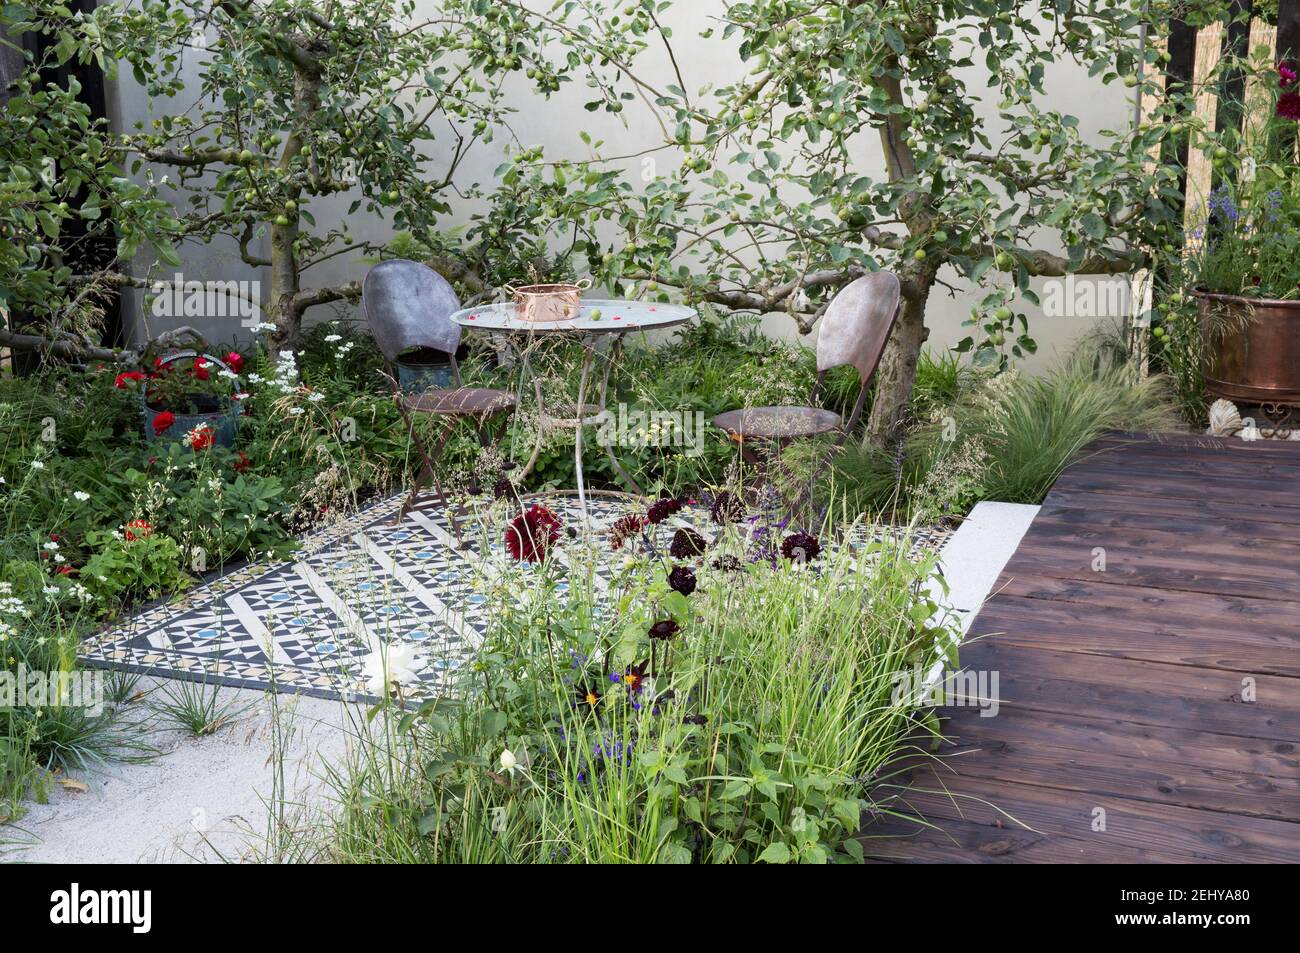 Cortile giardino tavolo e sedie su patio mosaico piastrellato con alberi da frutta di mela contro una parete giardino renderizzata terrazza in legno in estate Inghilterra UK Foto Stock